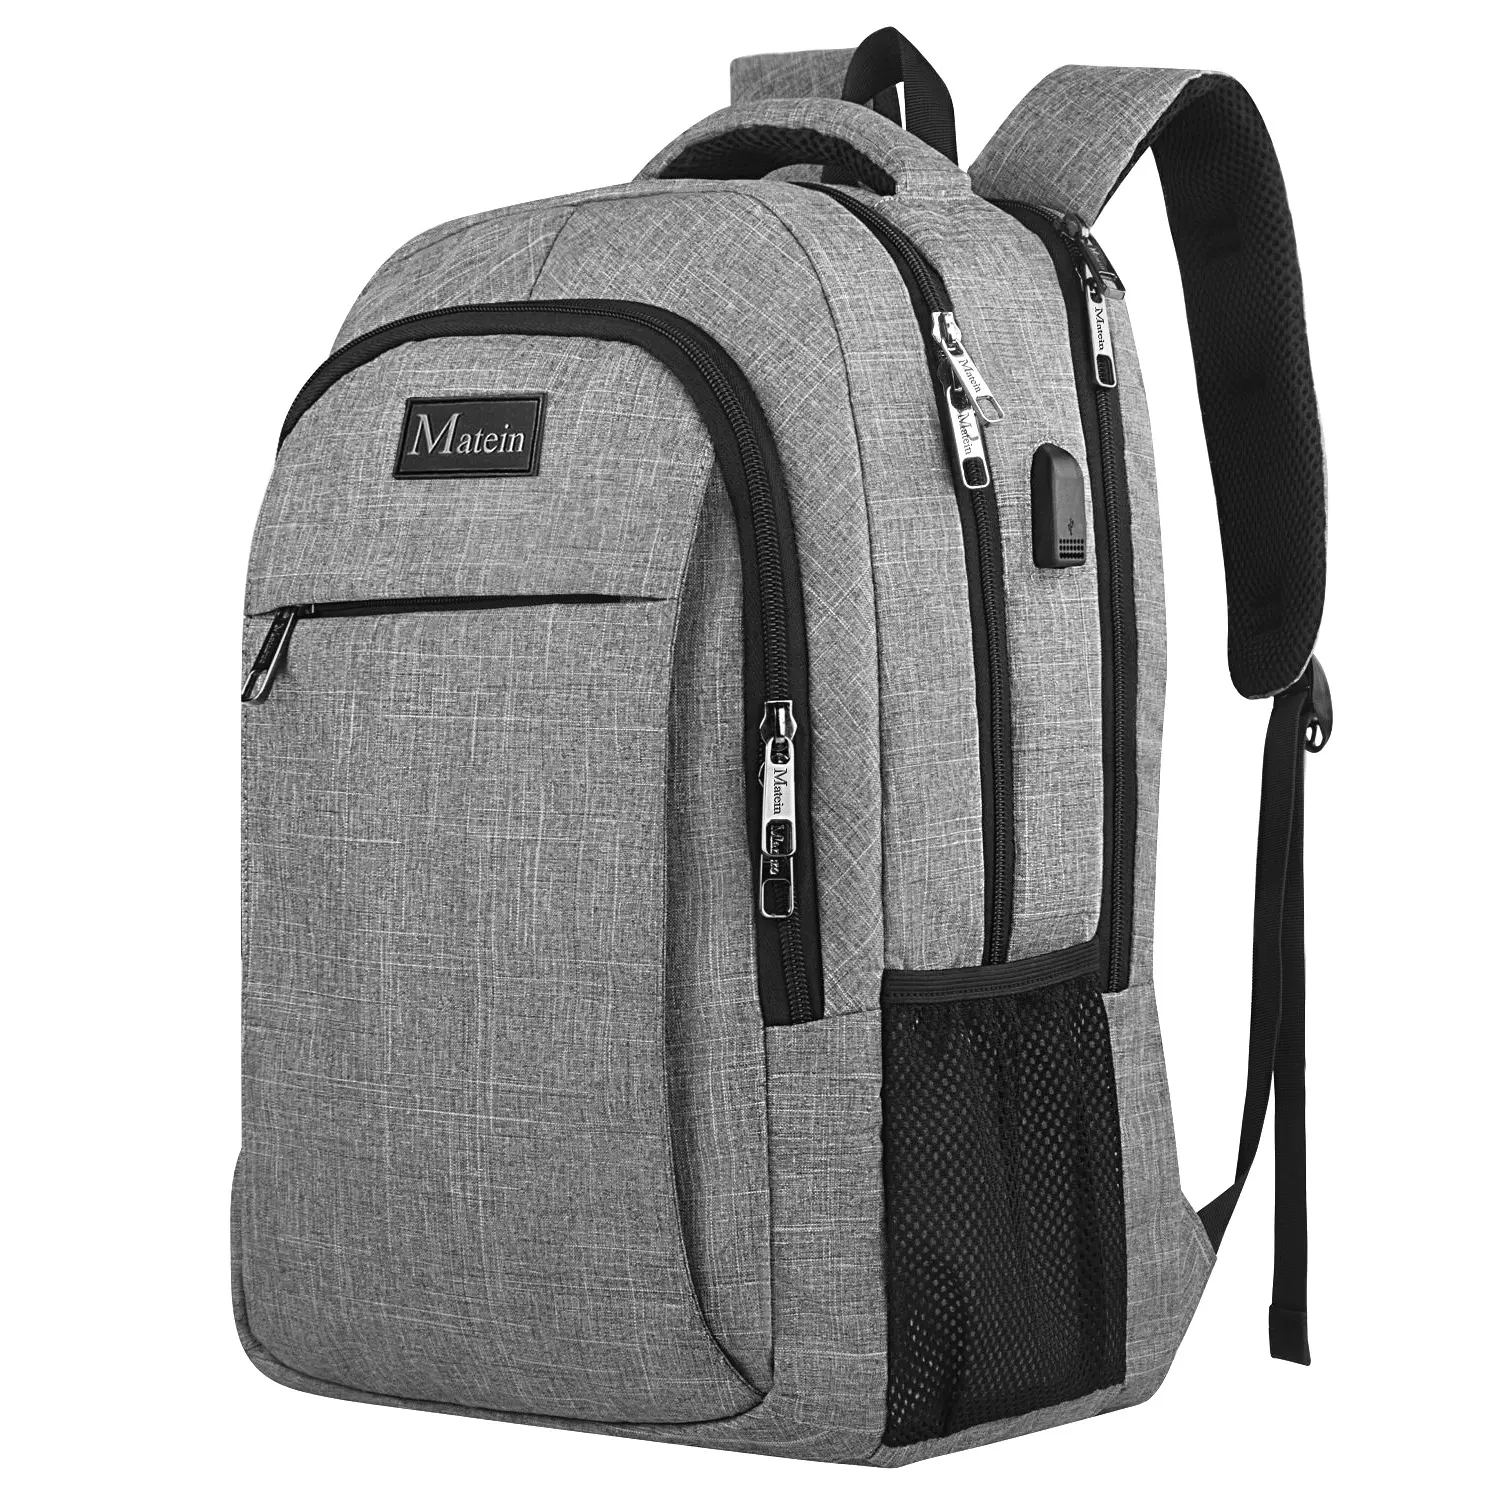 Matein यात्रा लैपटॉप बैग व्यापार विरोधी चोरी स्लिम टिकाऊ यूएसबी चार्जिंग पोर्ट के साथ लैपटॉप बैग यात्रा बैग महिलाओं को पुरुषों के लिए